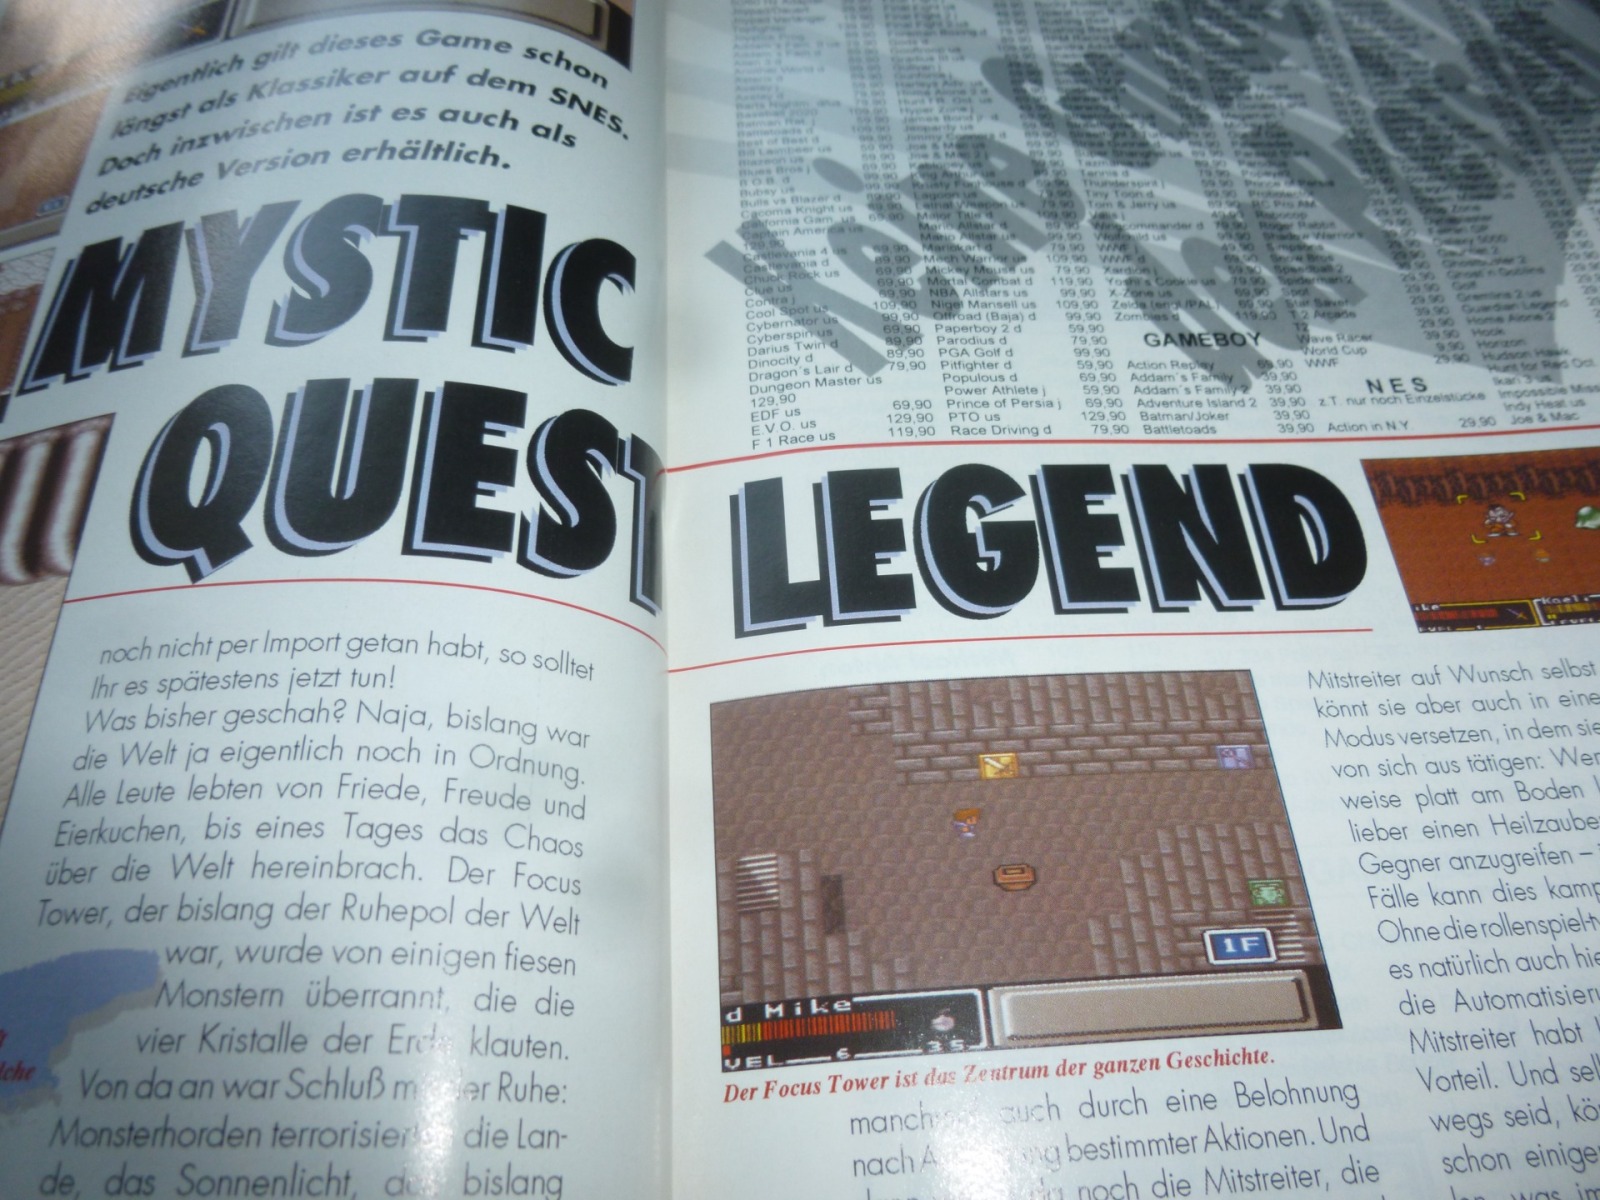 TOTAL Das unabhängige Magazin - 100 Nintendo - Ausgabe 12/93 1993 19